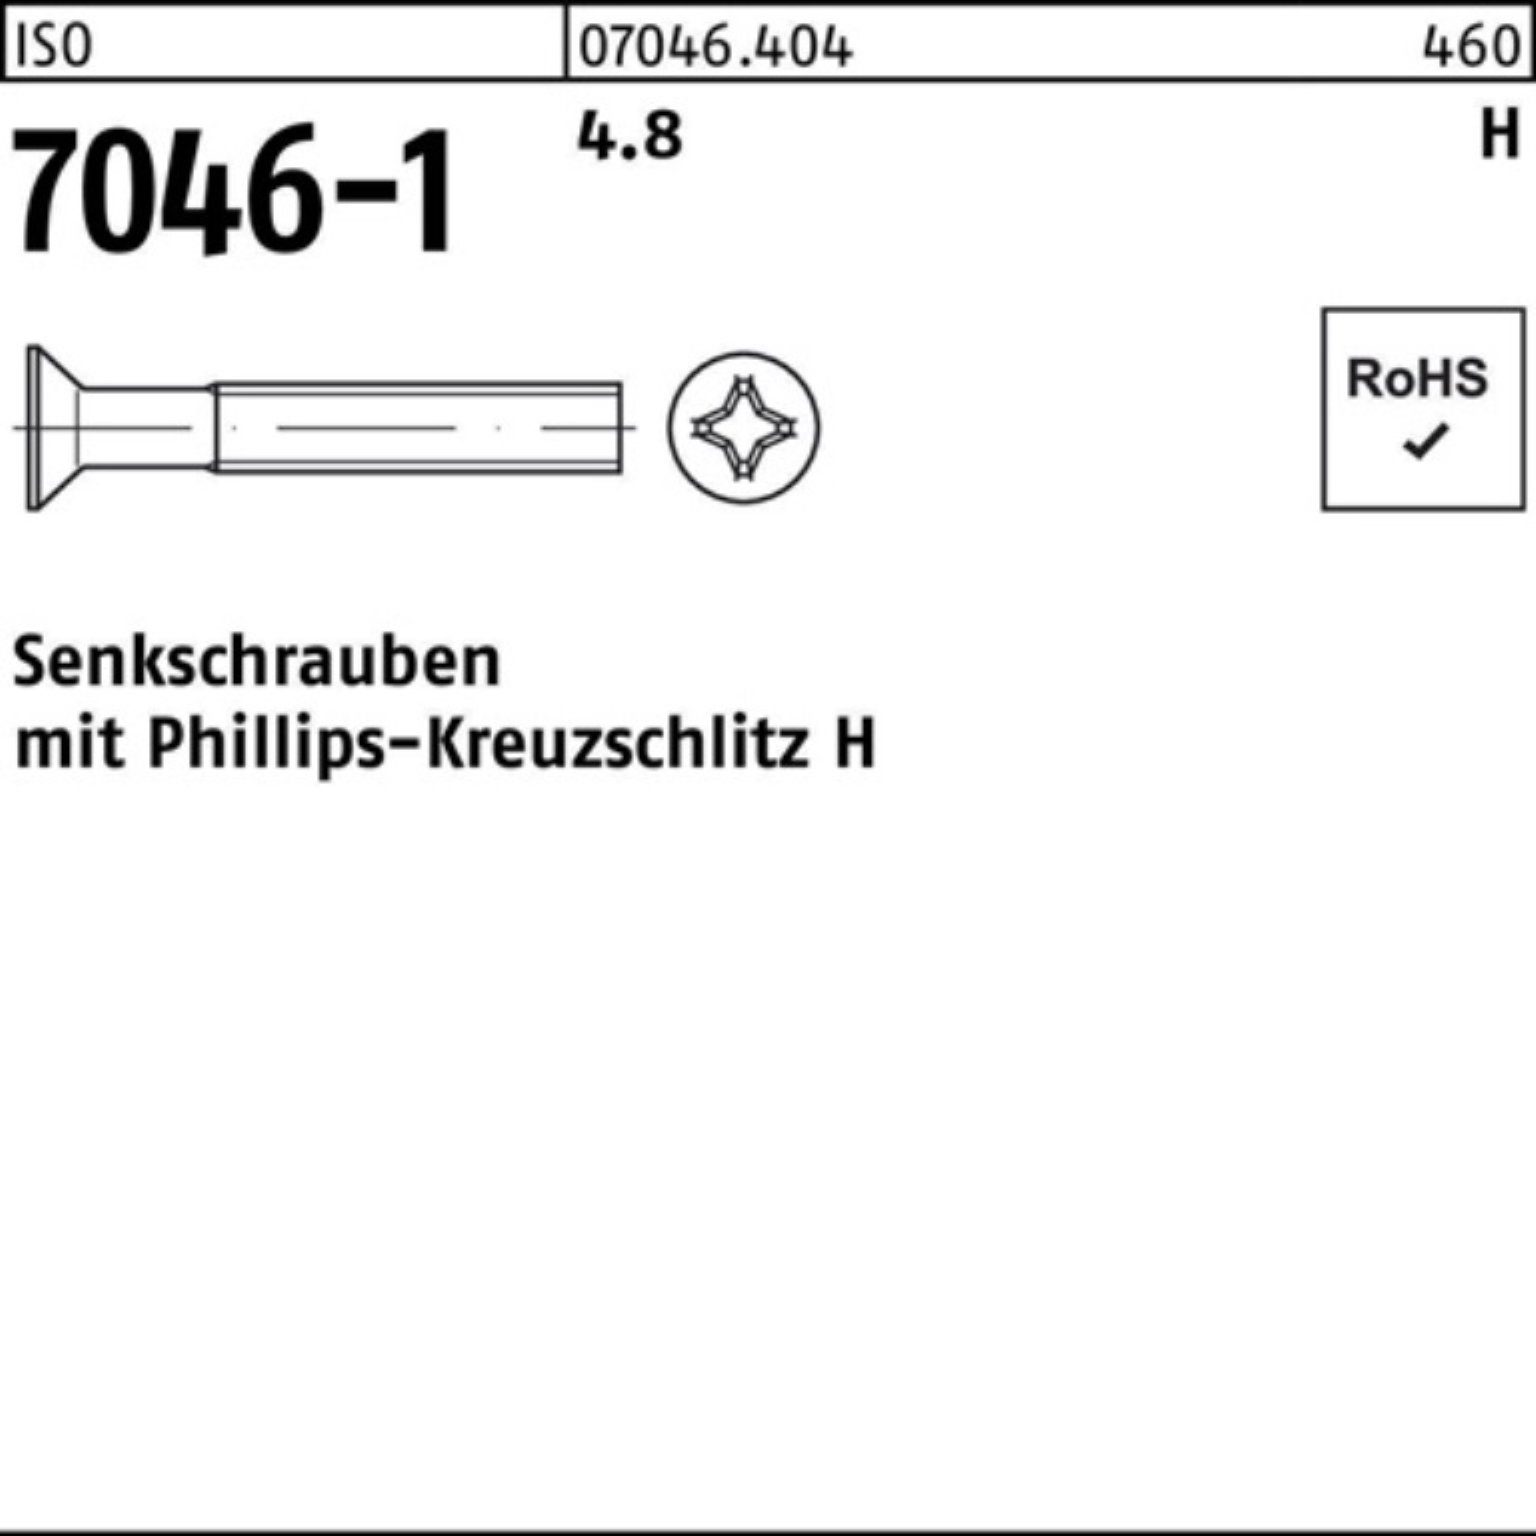 7046-1 6-H 704 M3x 2000er PH Senkschraube Senkschraube 4.8 ISO ISO 2000 Reyher Stück Pack